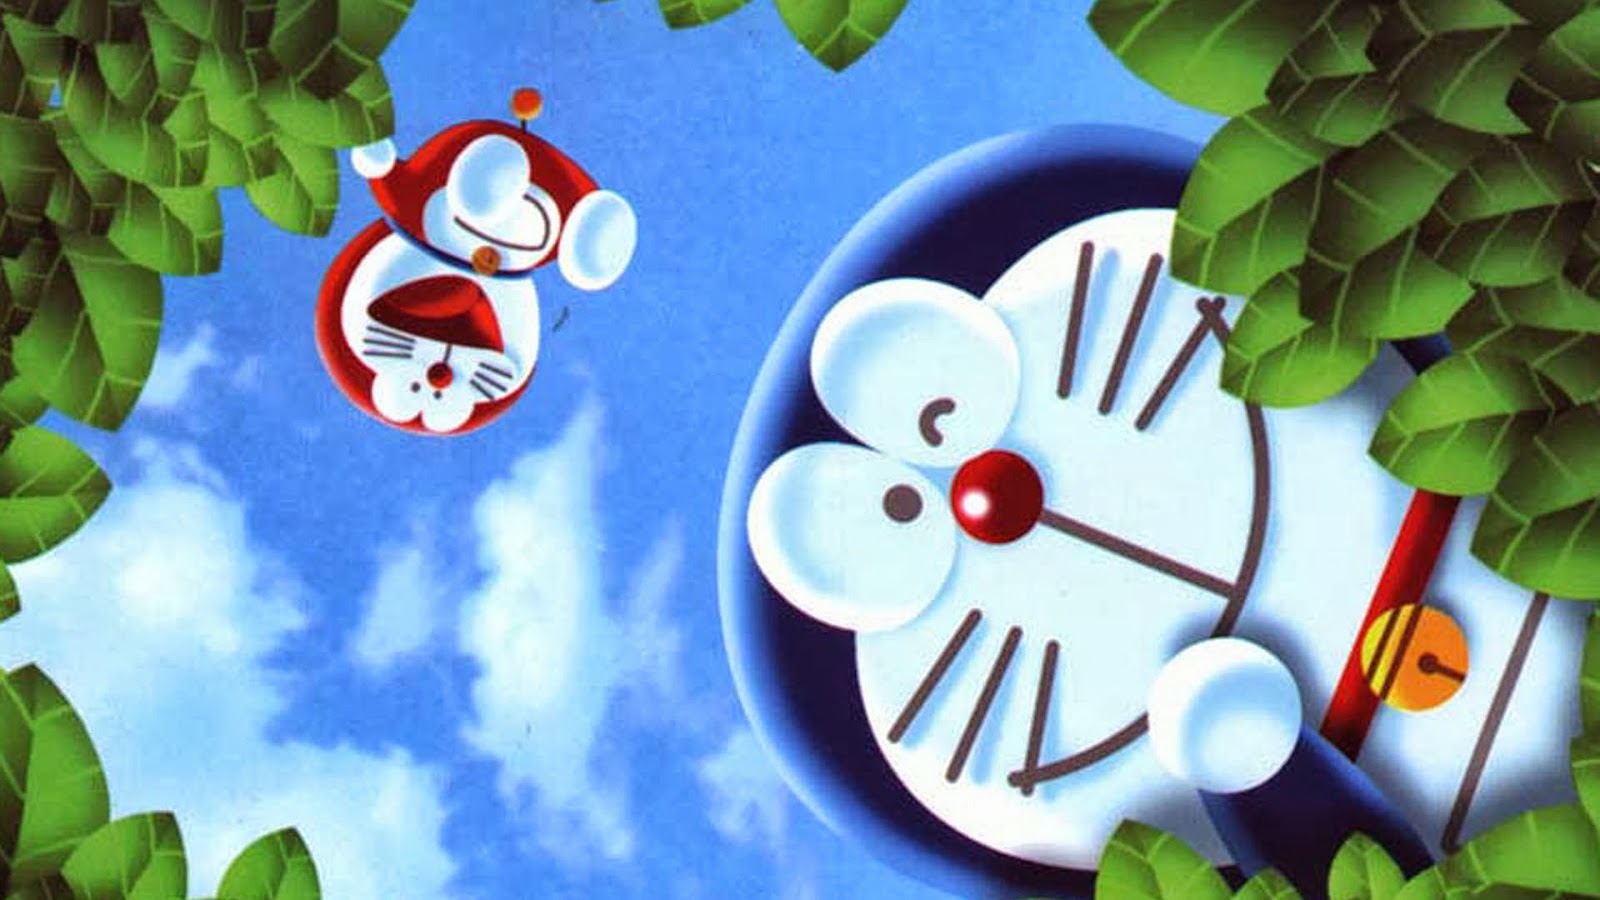 Wajib Baca Nih Episode Terakhir Doraemon Yang Mengharukan